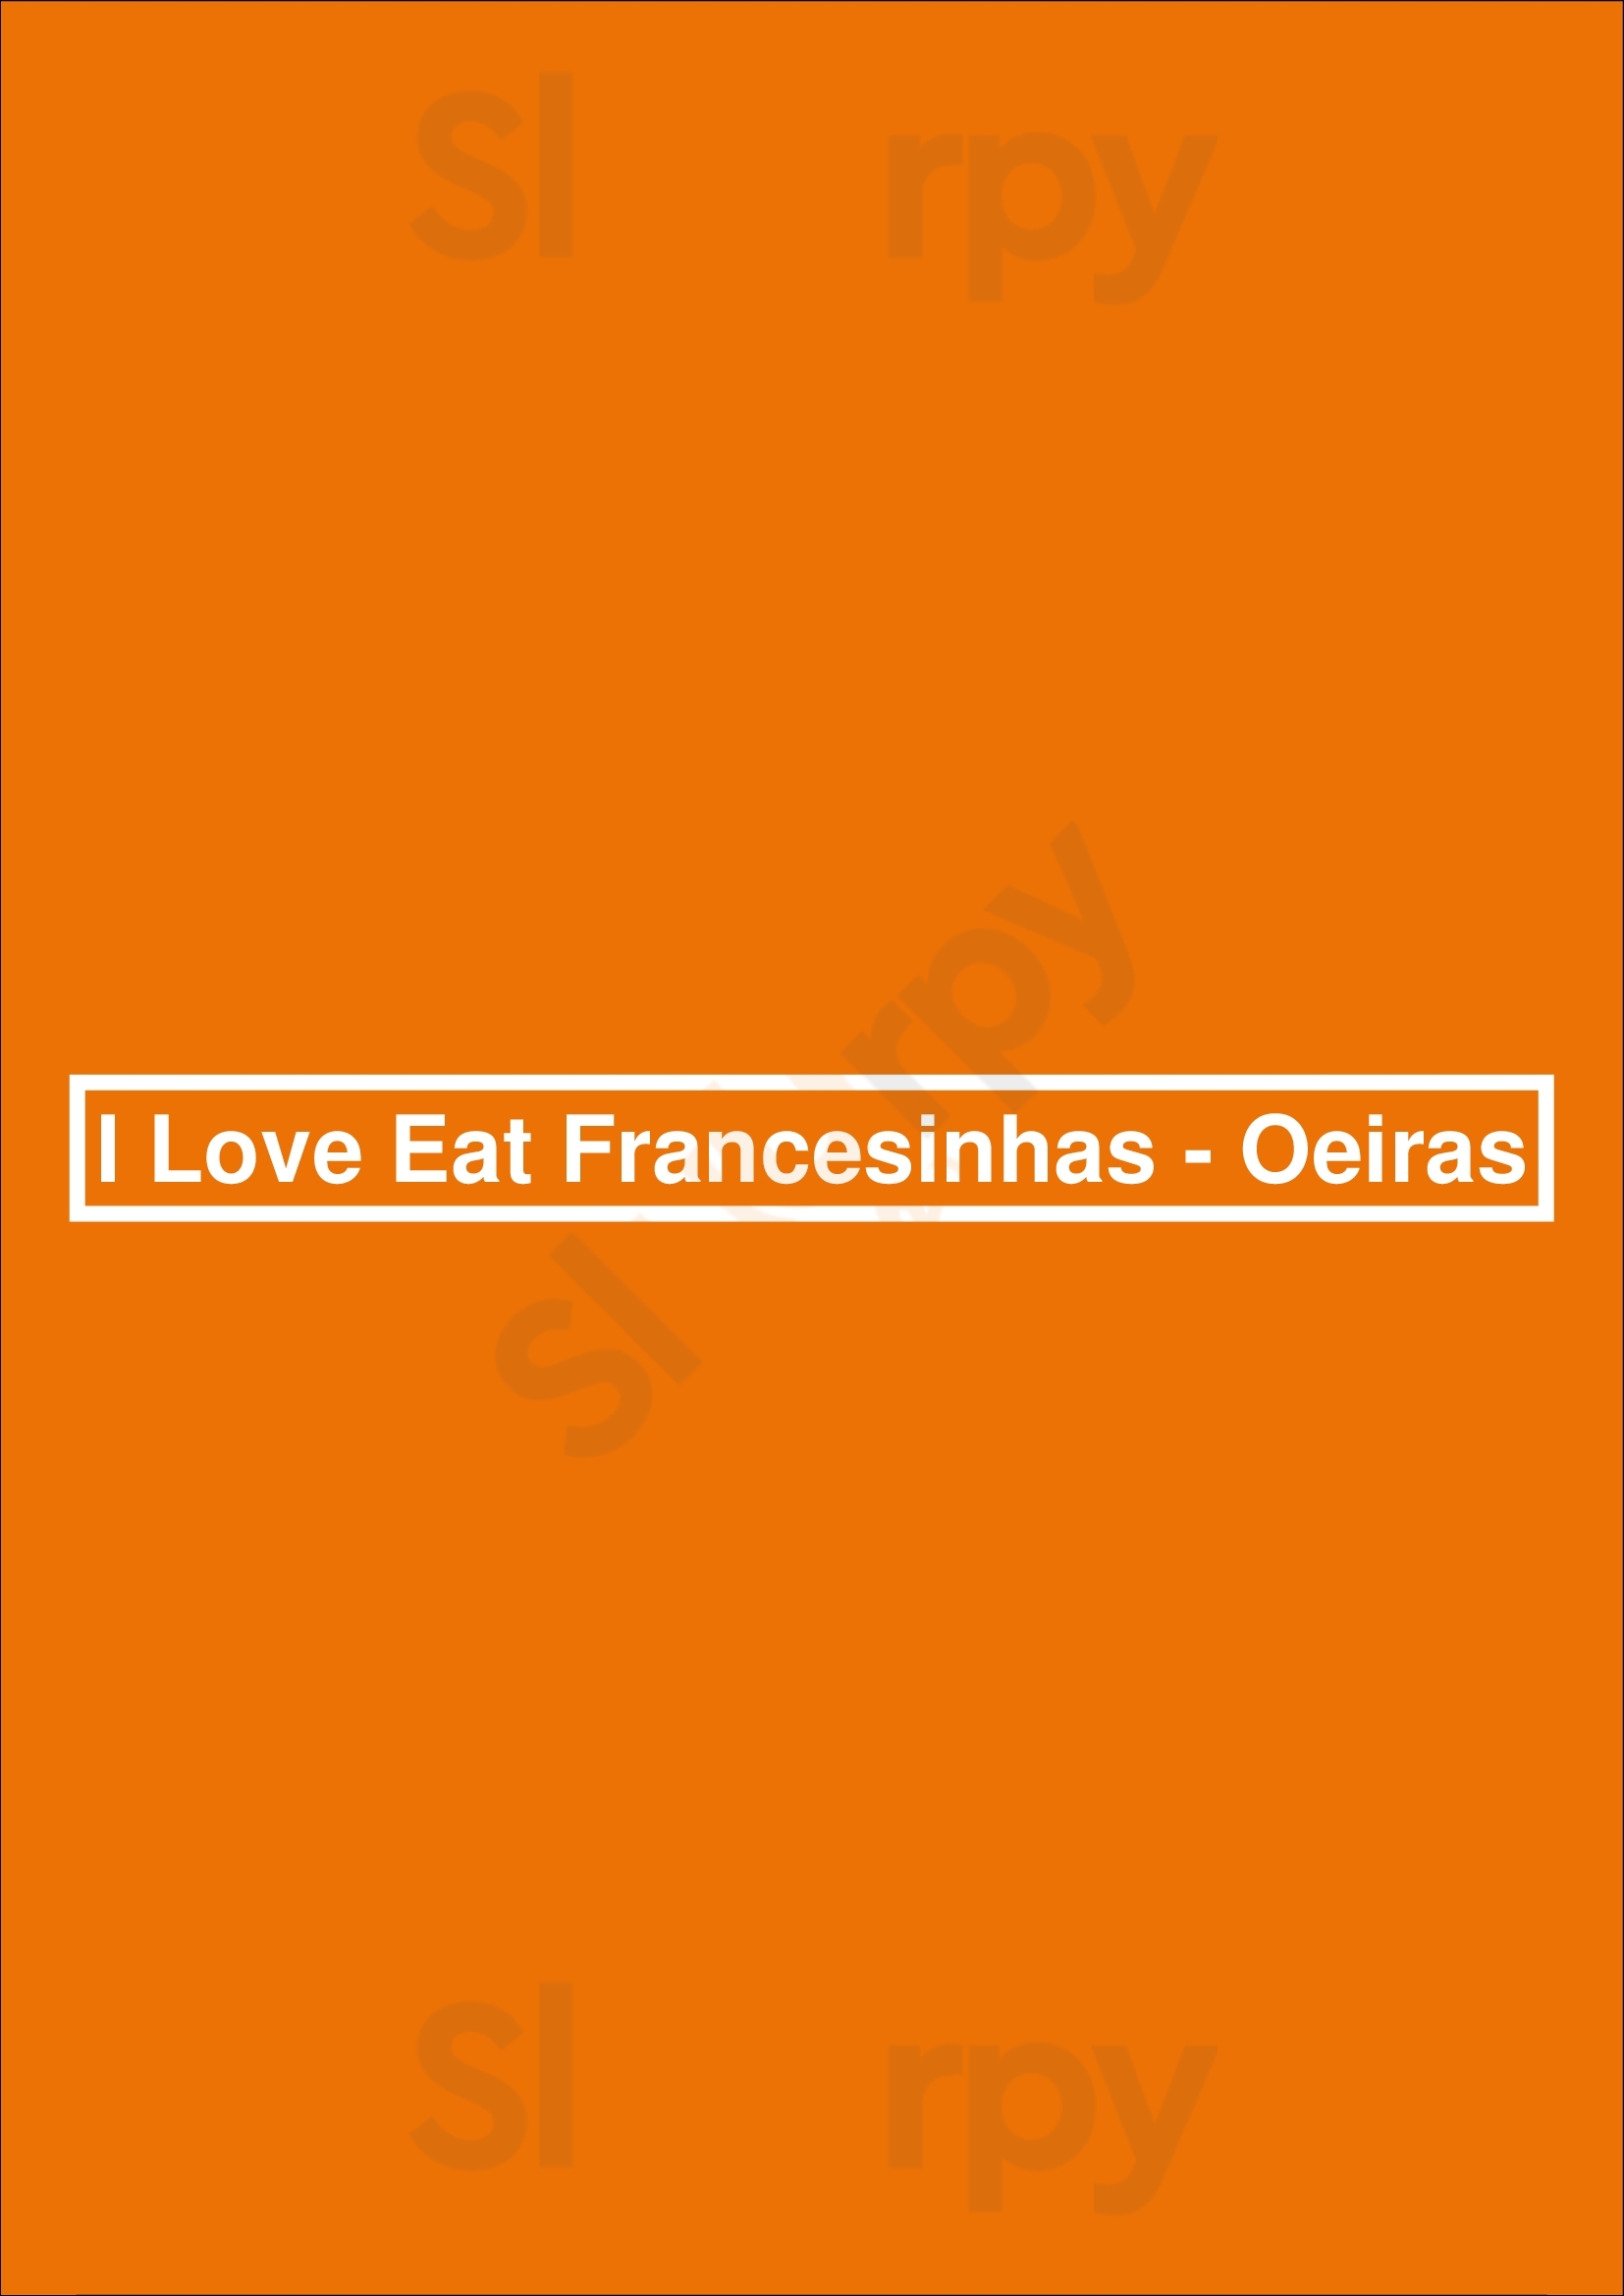 I Love Eat Francesinhas - Oeiras Oeiras Menu - 1